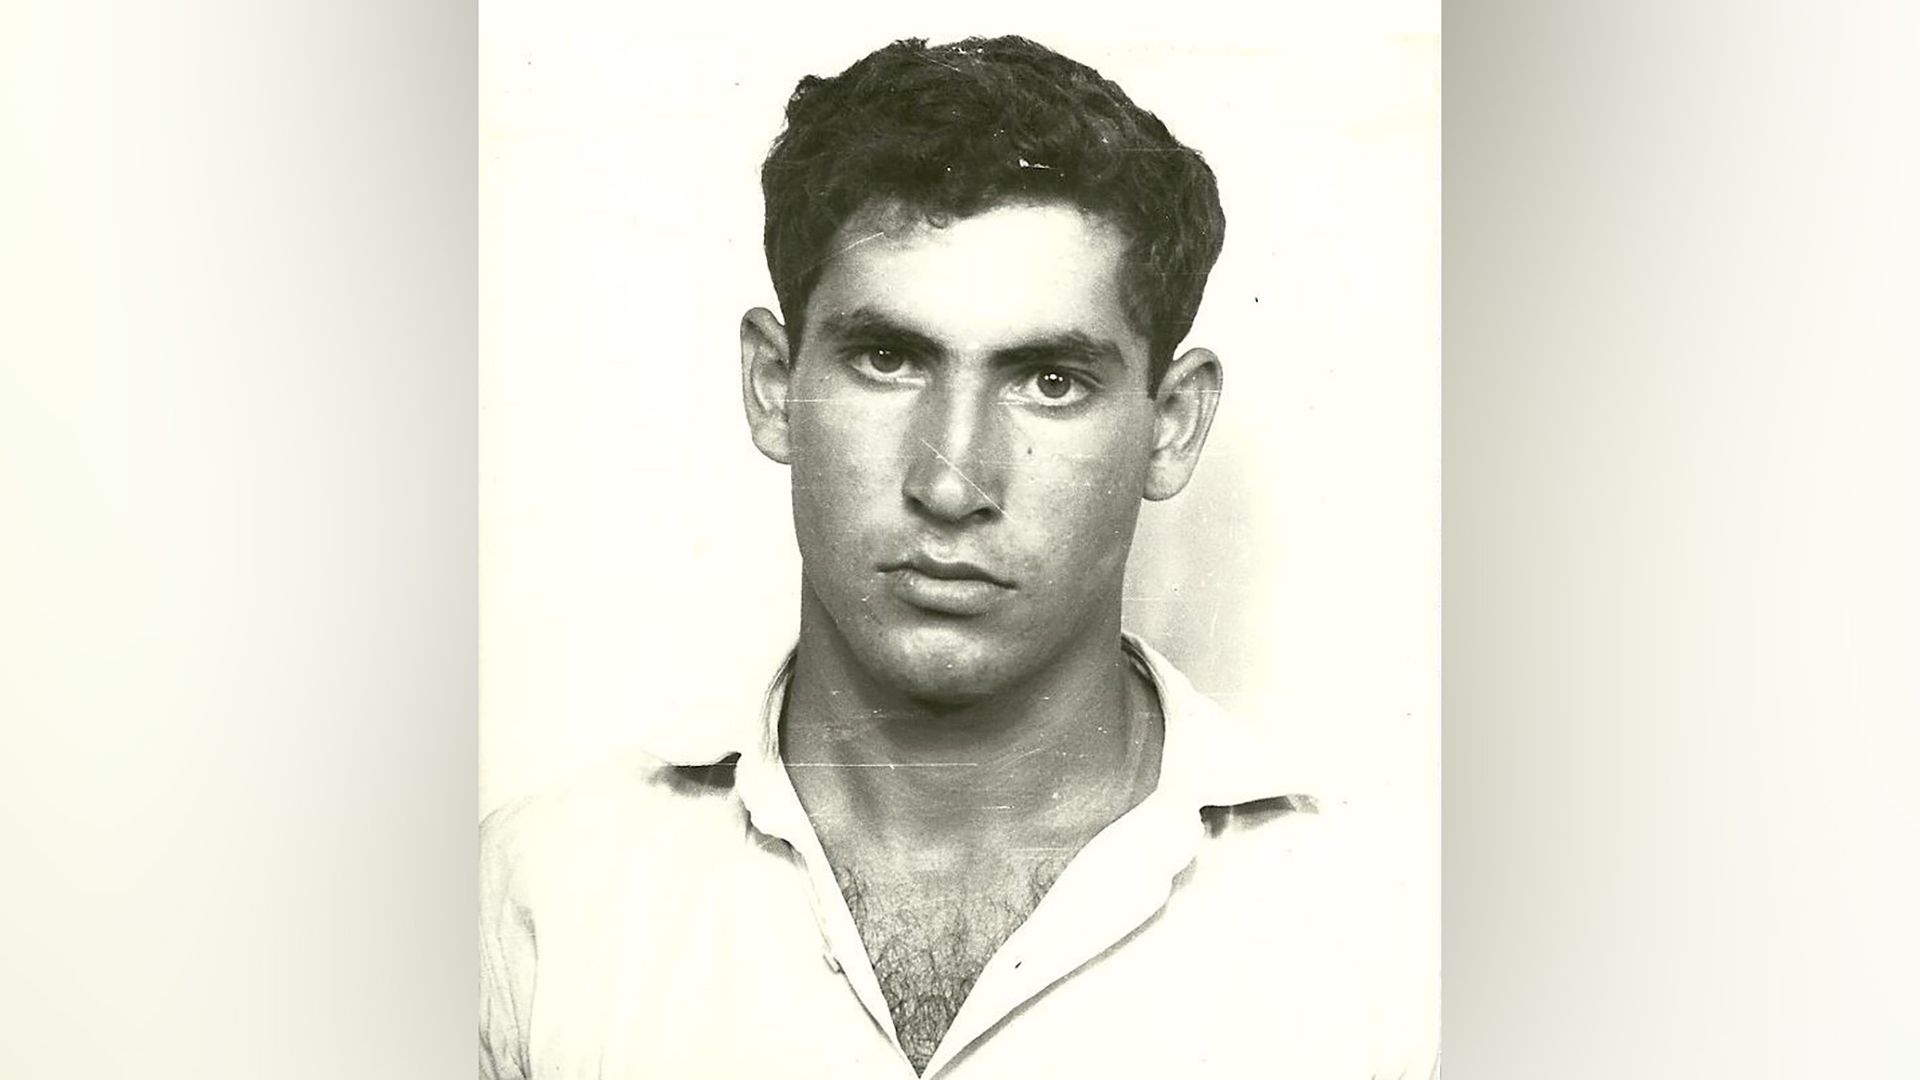 Benjamin Netanyahu in his youth